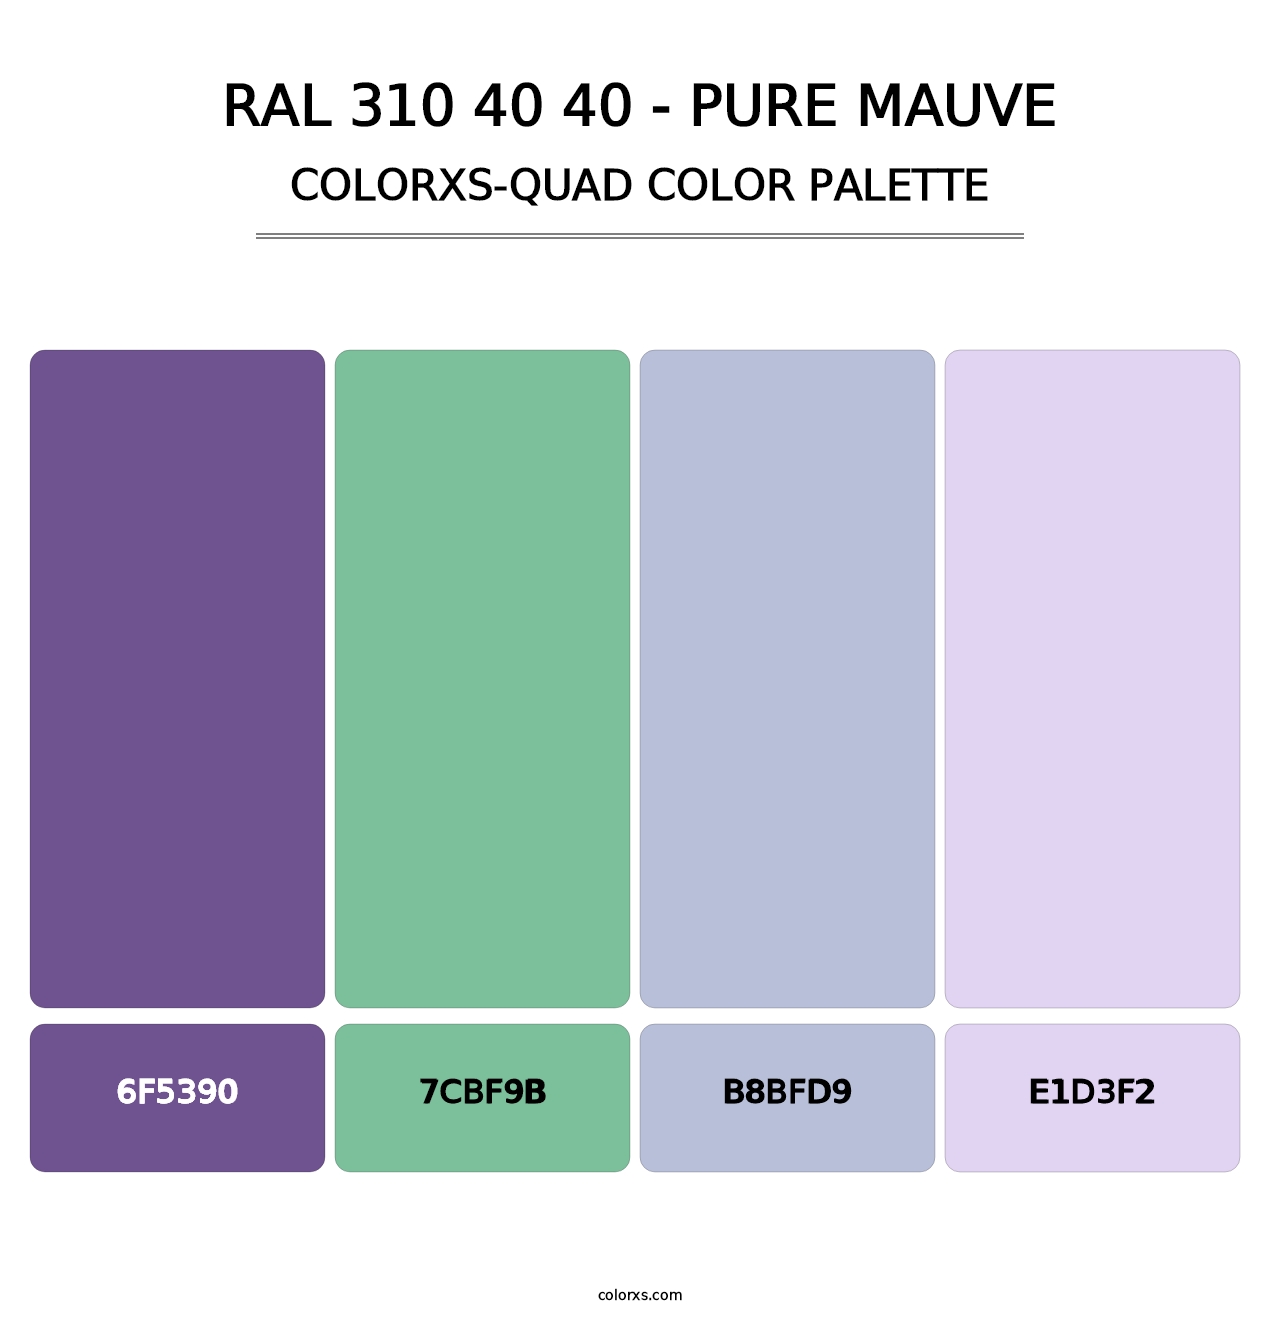 RAL 310 40 40 - Pure Mauve - Colorxs Quad Palette